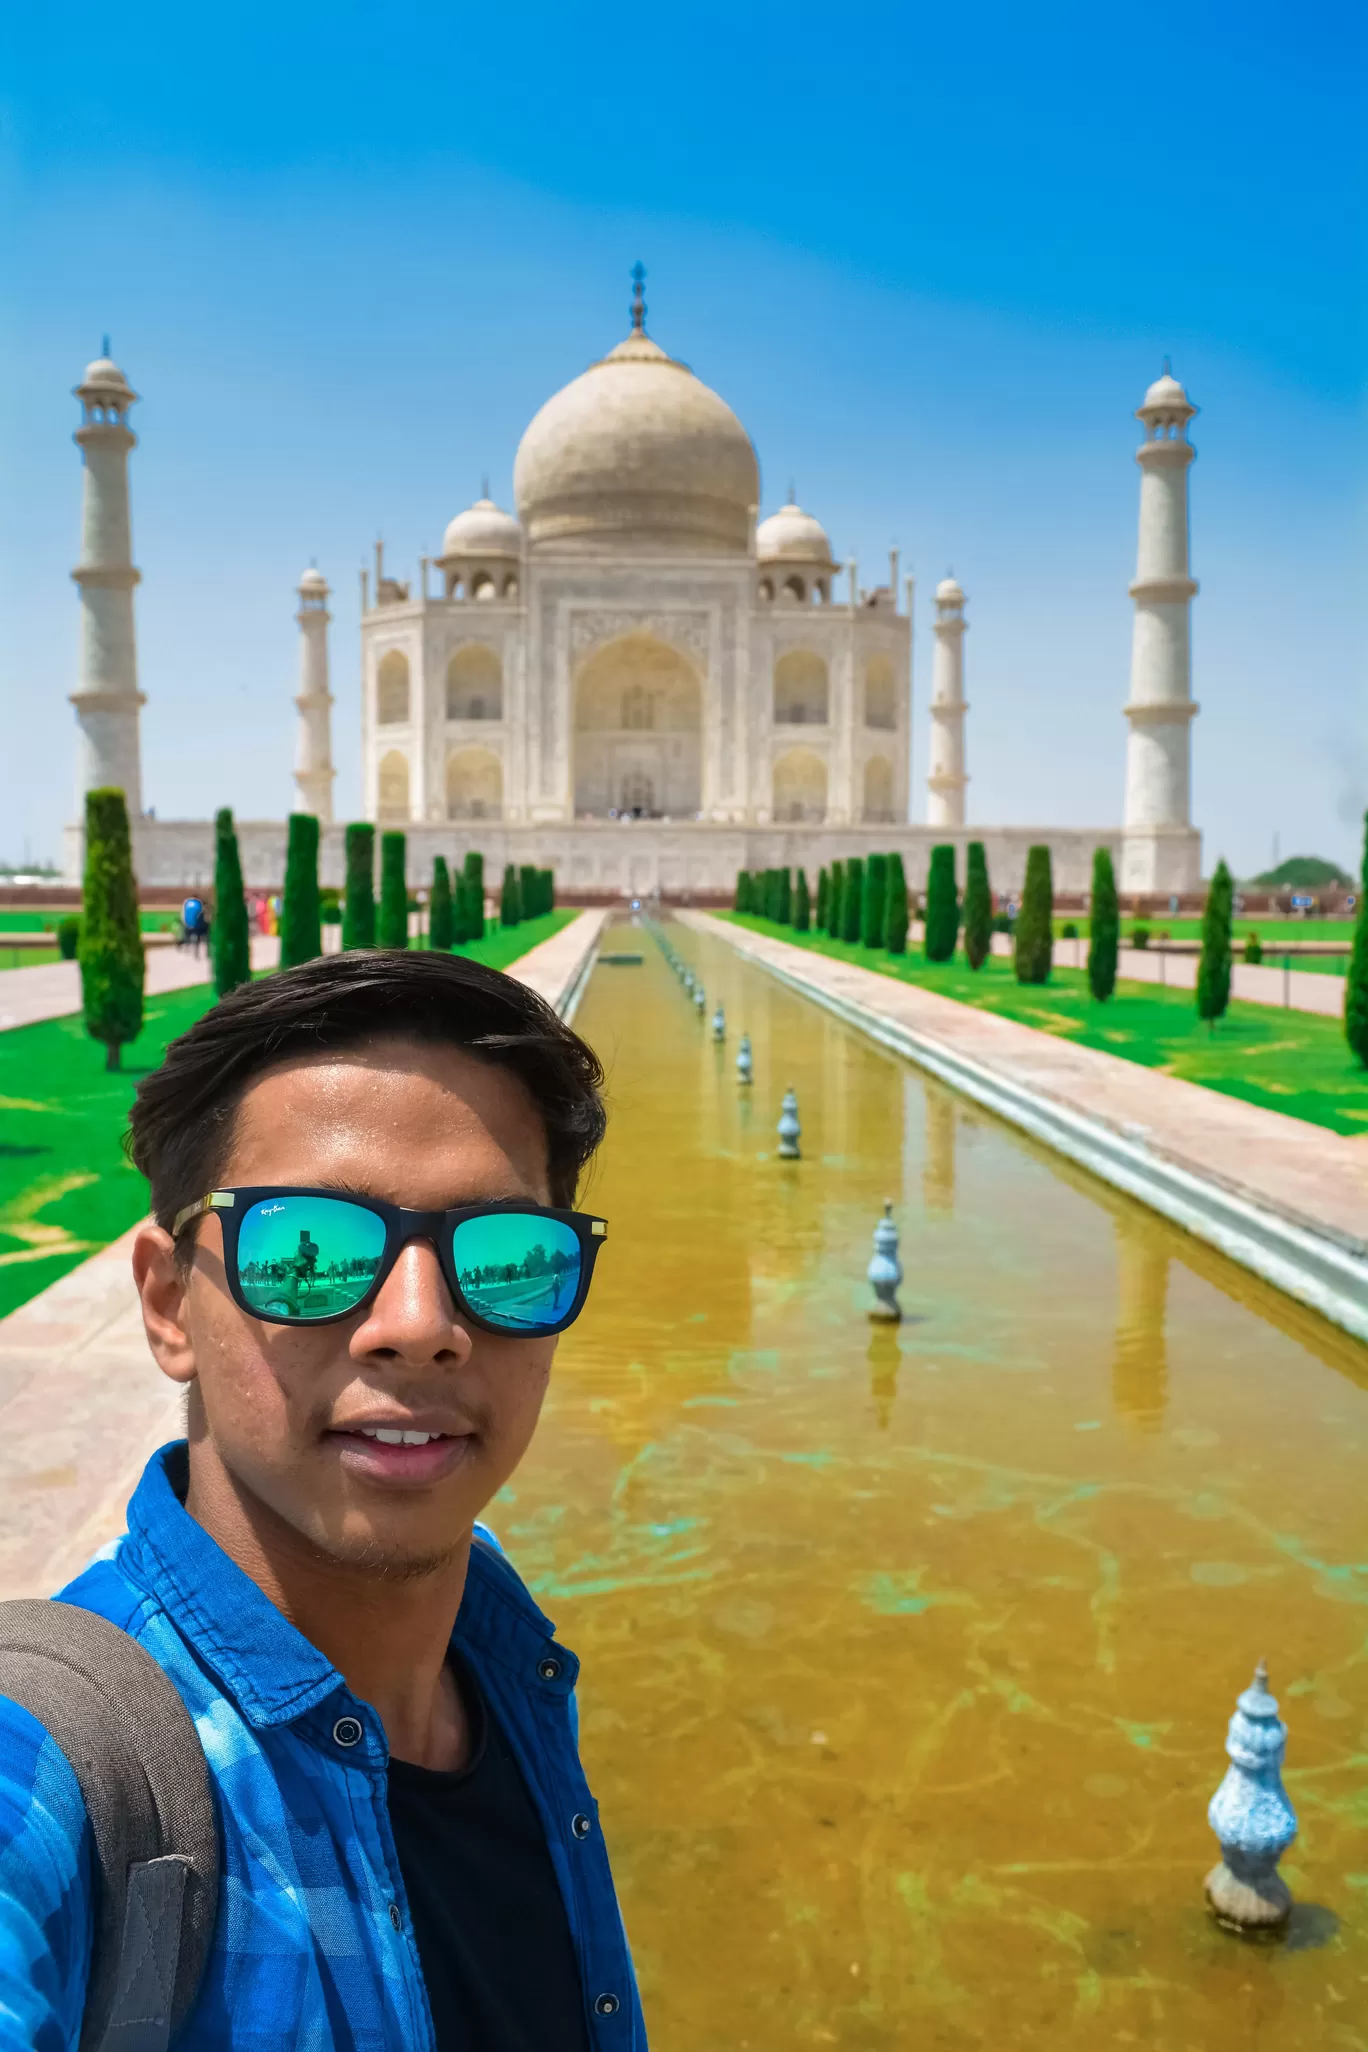 Photo of Taj Mahal By Biswajeet Panda